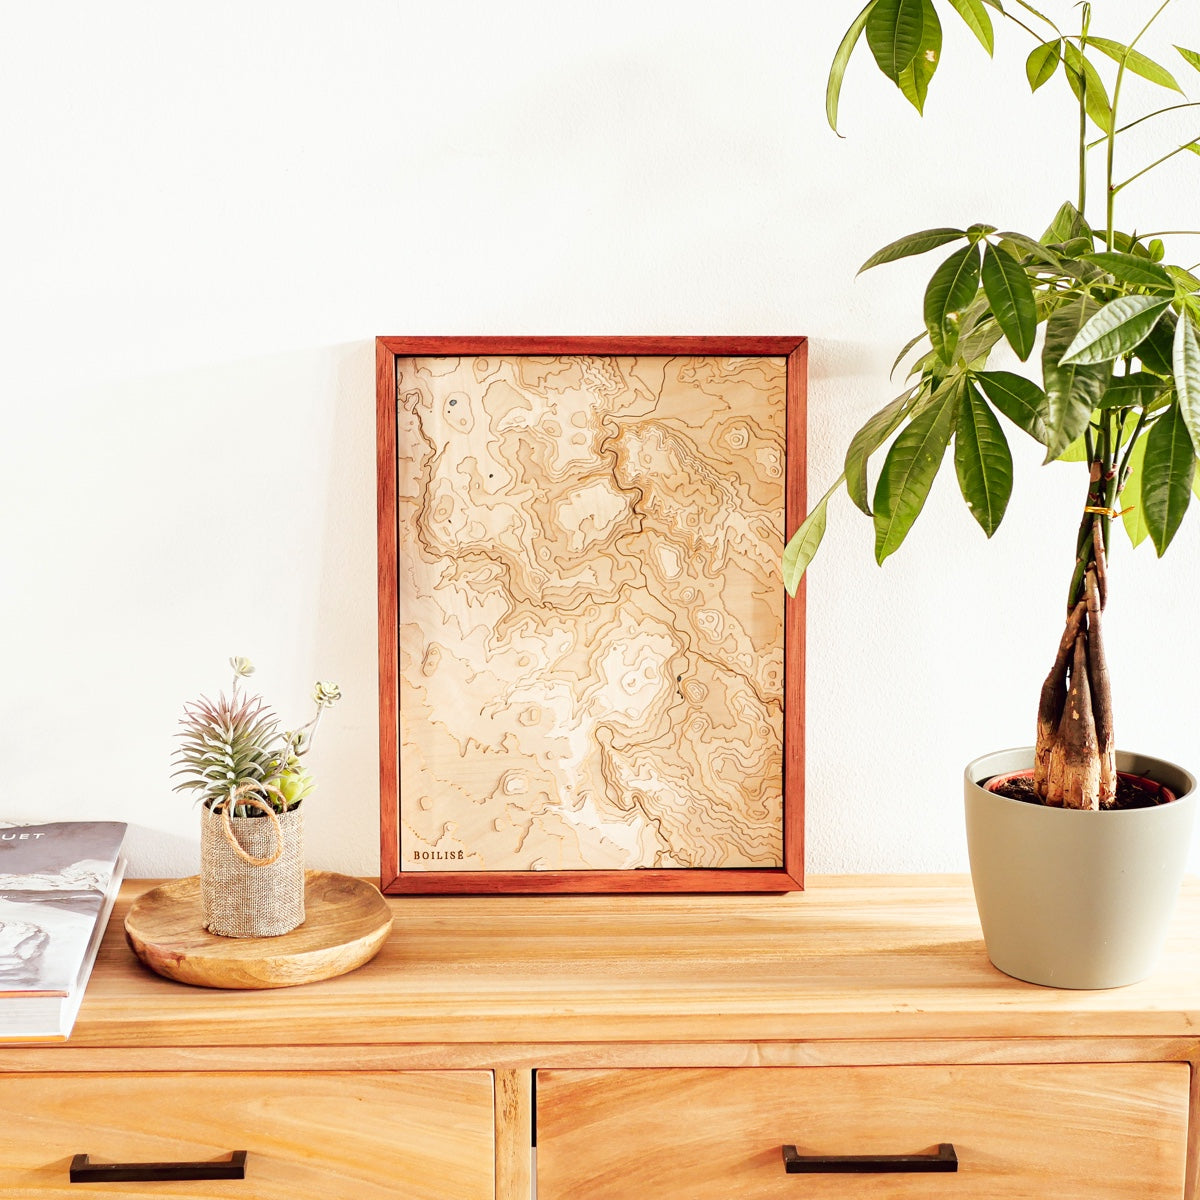 Décoration bois-blanc avec commode, plante et carte topographique du Puy-en-Velay